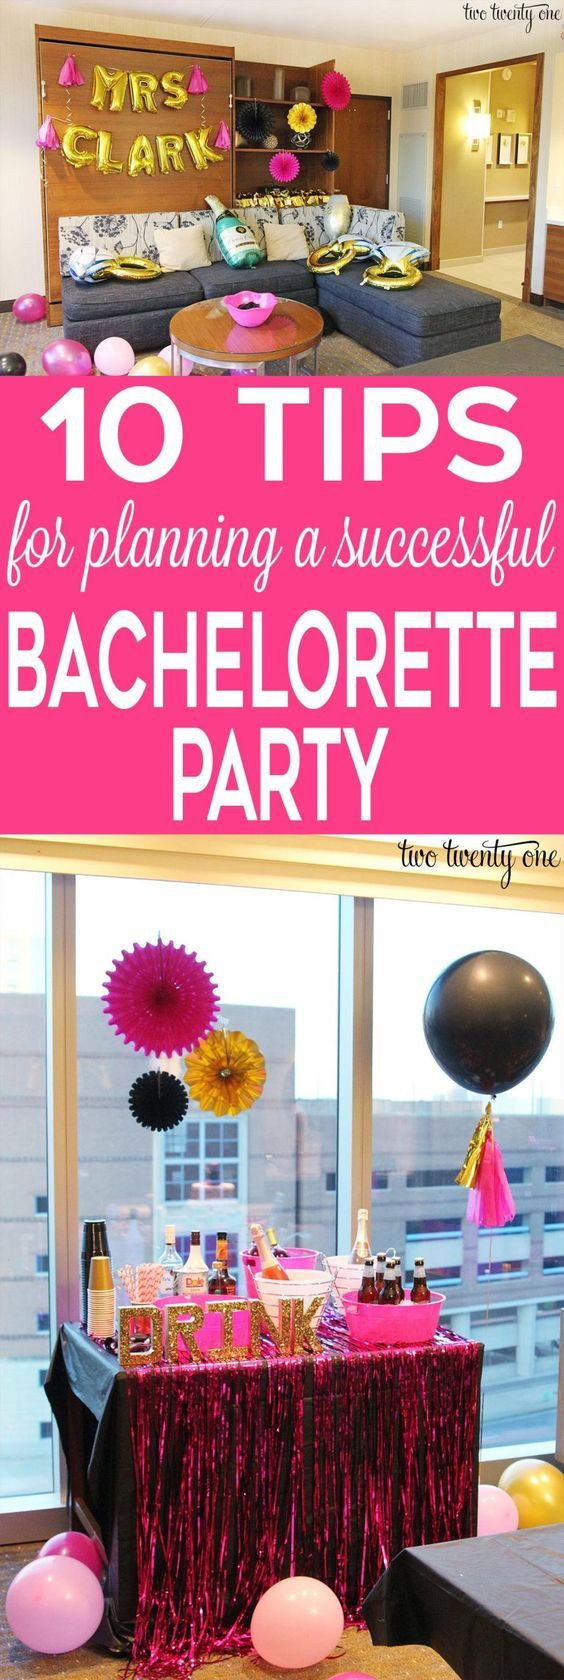 Budget Friendly Bachelorette Party Ideas
 Bachelorette Party Ideas 10 Awesome Tips